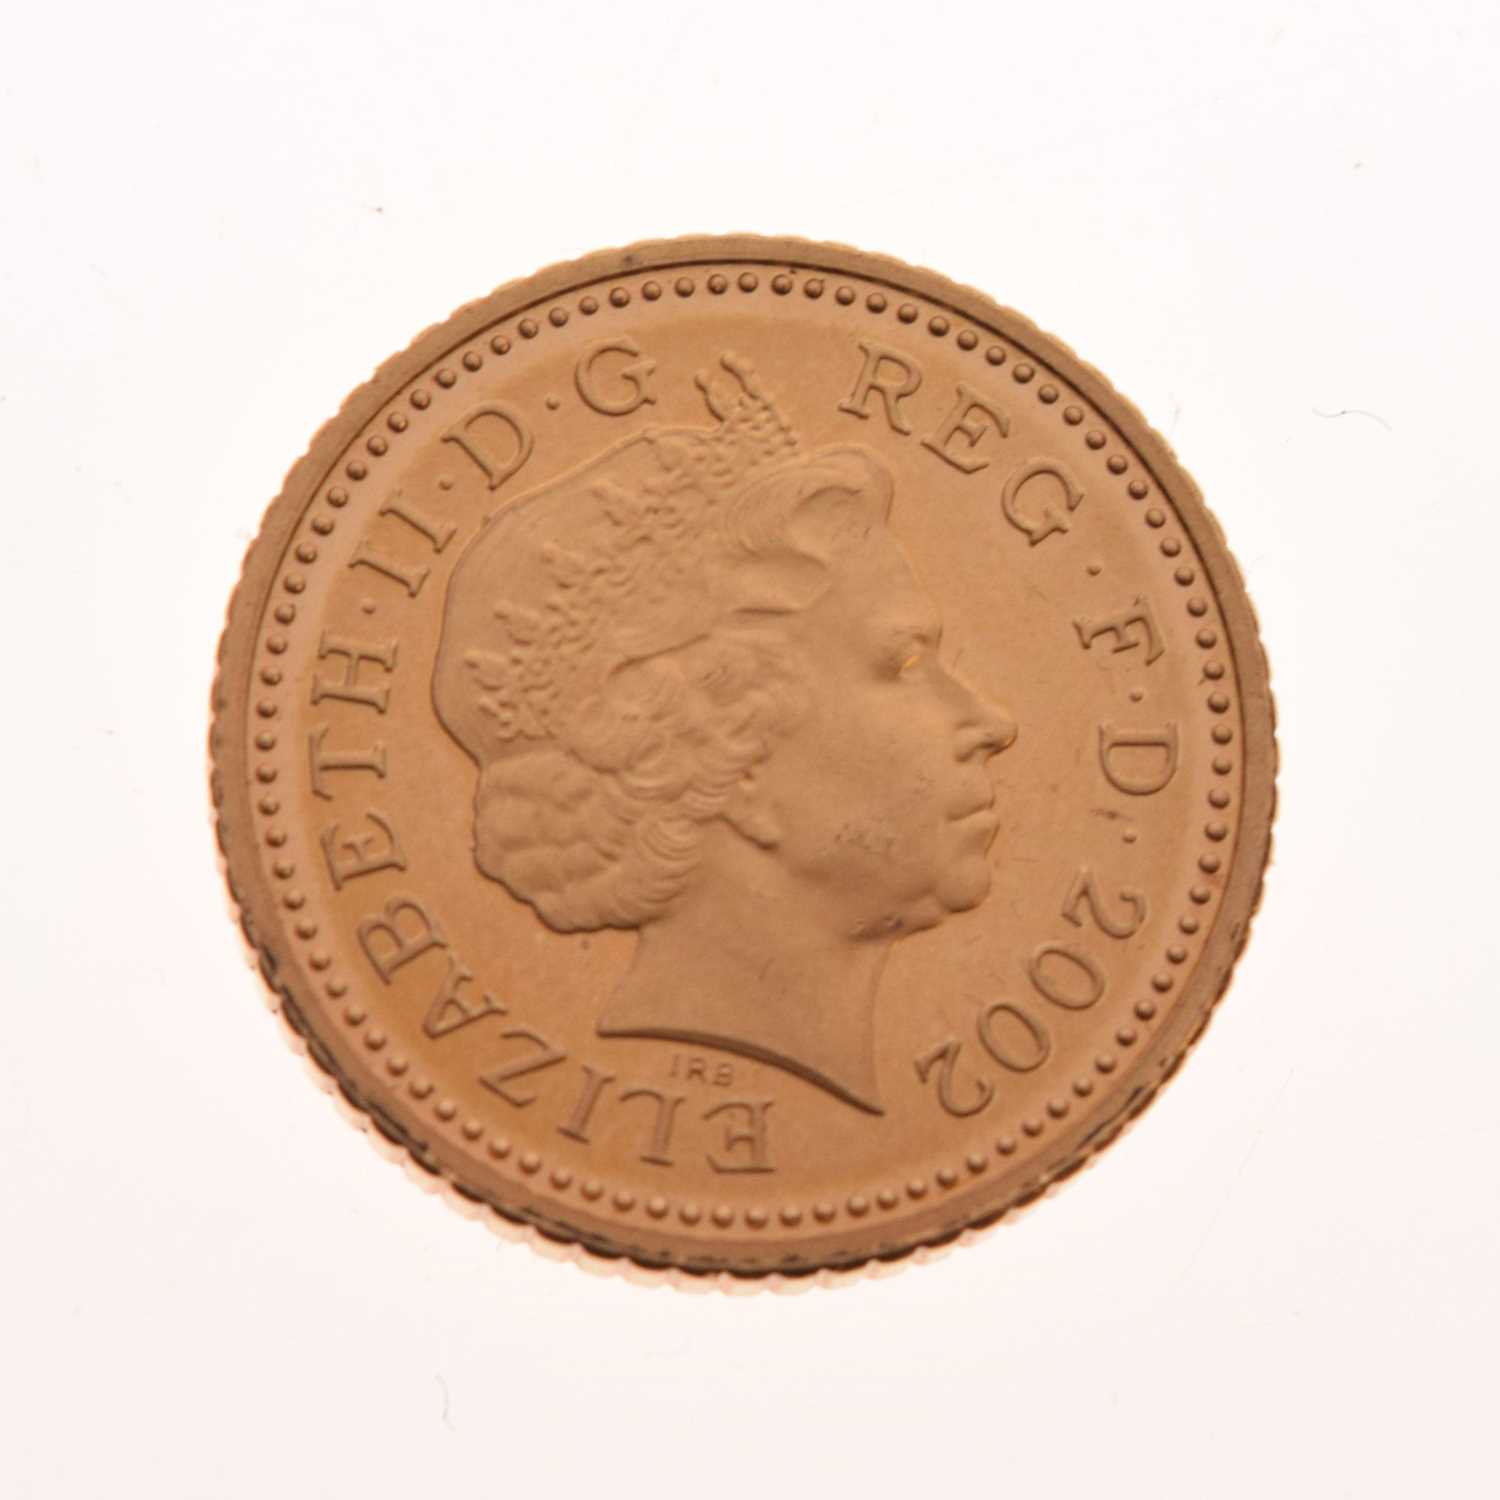 Queen Elizabeth II gold 5p coin, 2002